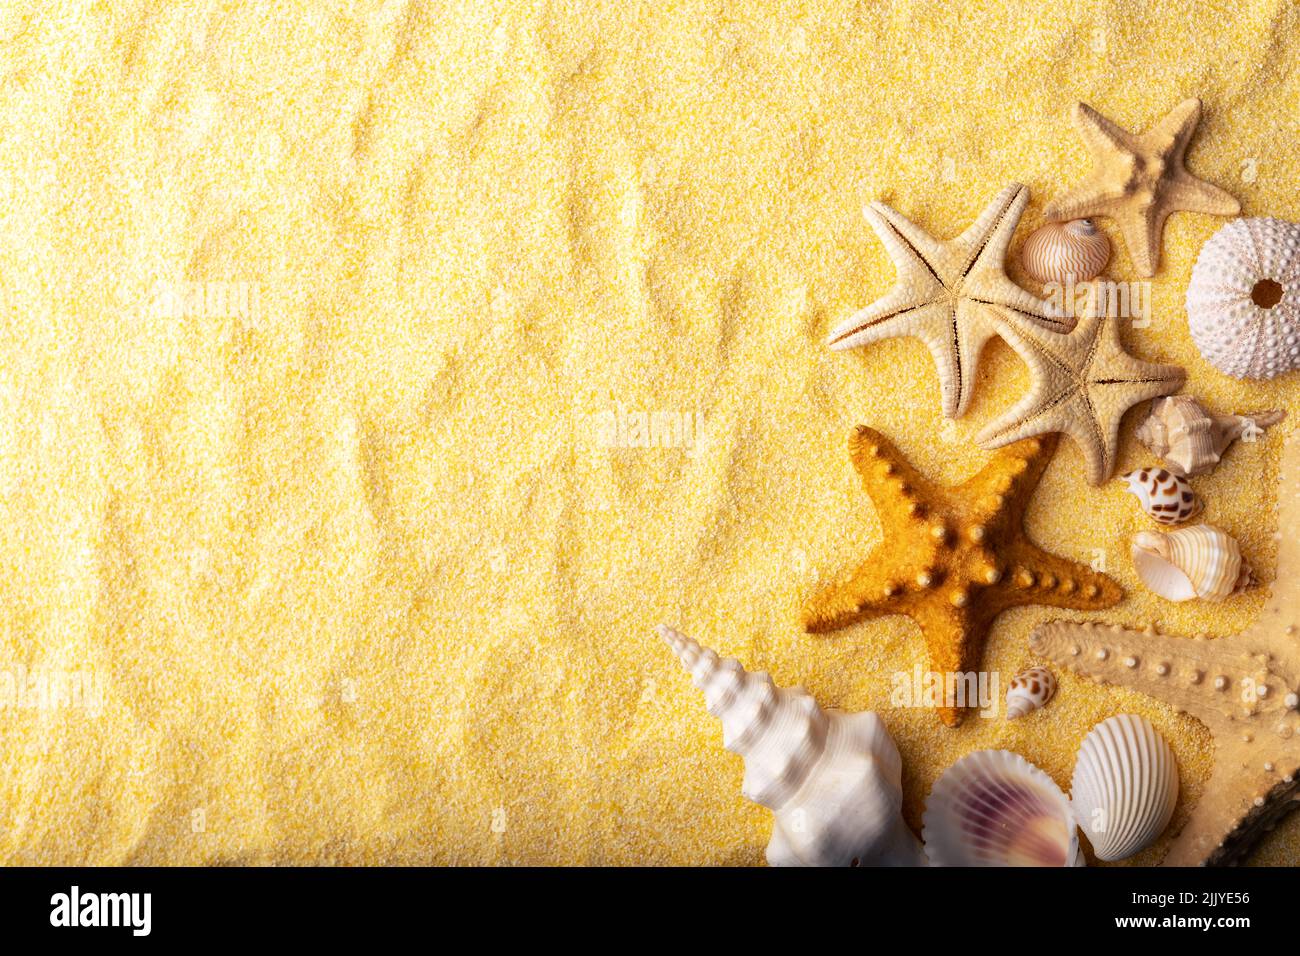 Ferien- und Sommerzeitkonzept mit Seesternen und Muscheln auf einem klaren, gelben Strandsand. Meer und Meer Urlaub Hintergrund Stockfoto